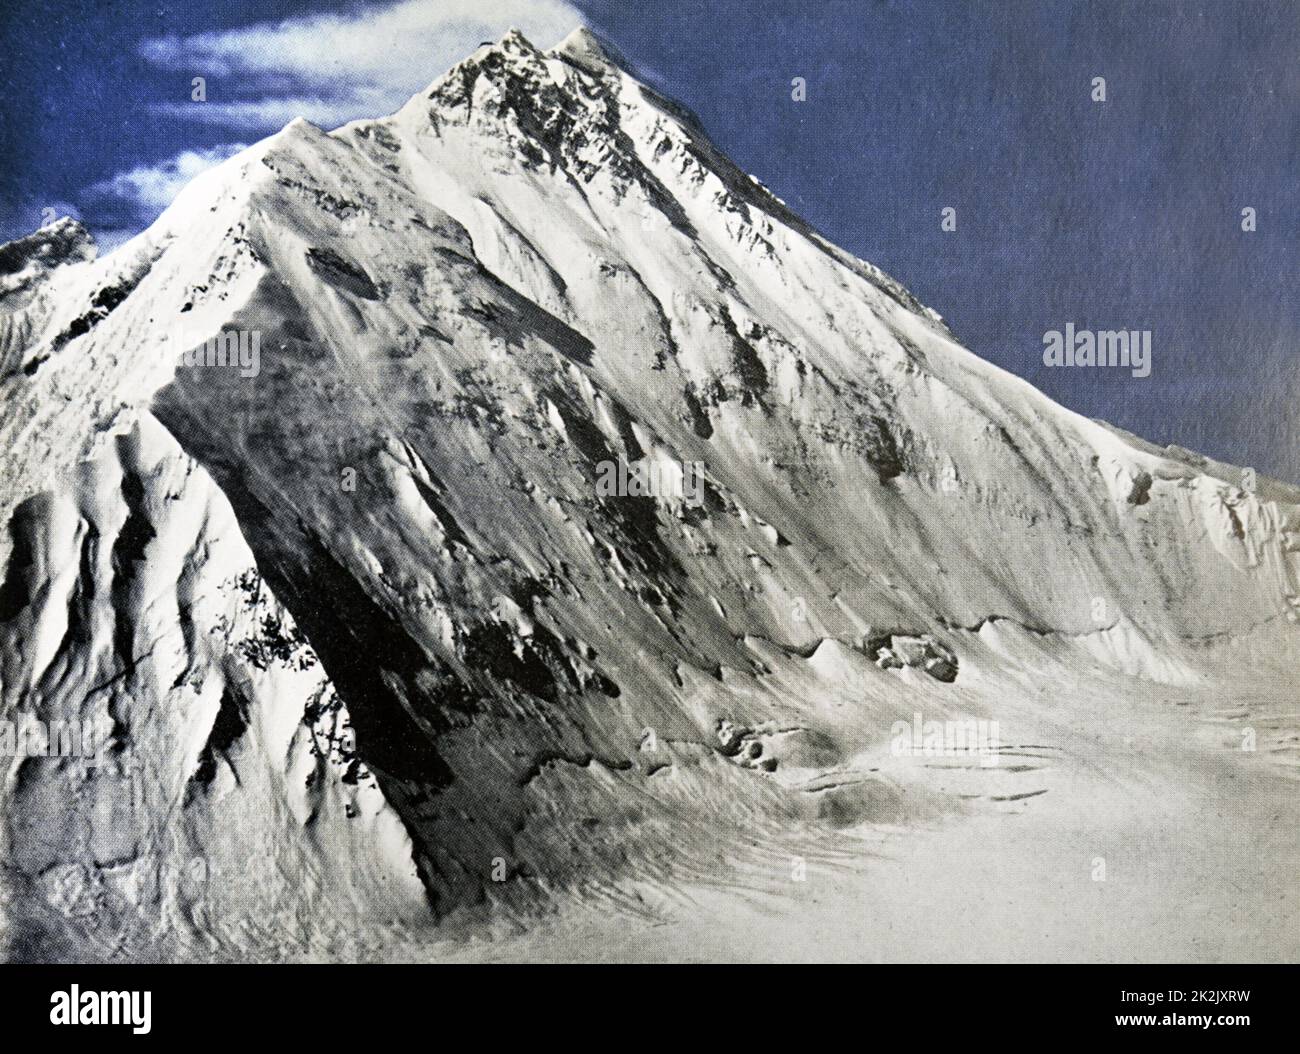 Fotografía en color de la cara norte del Everest. Fecha Siglo XX Foto de stock